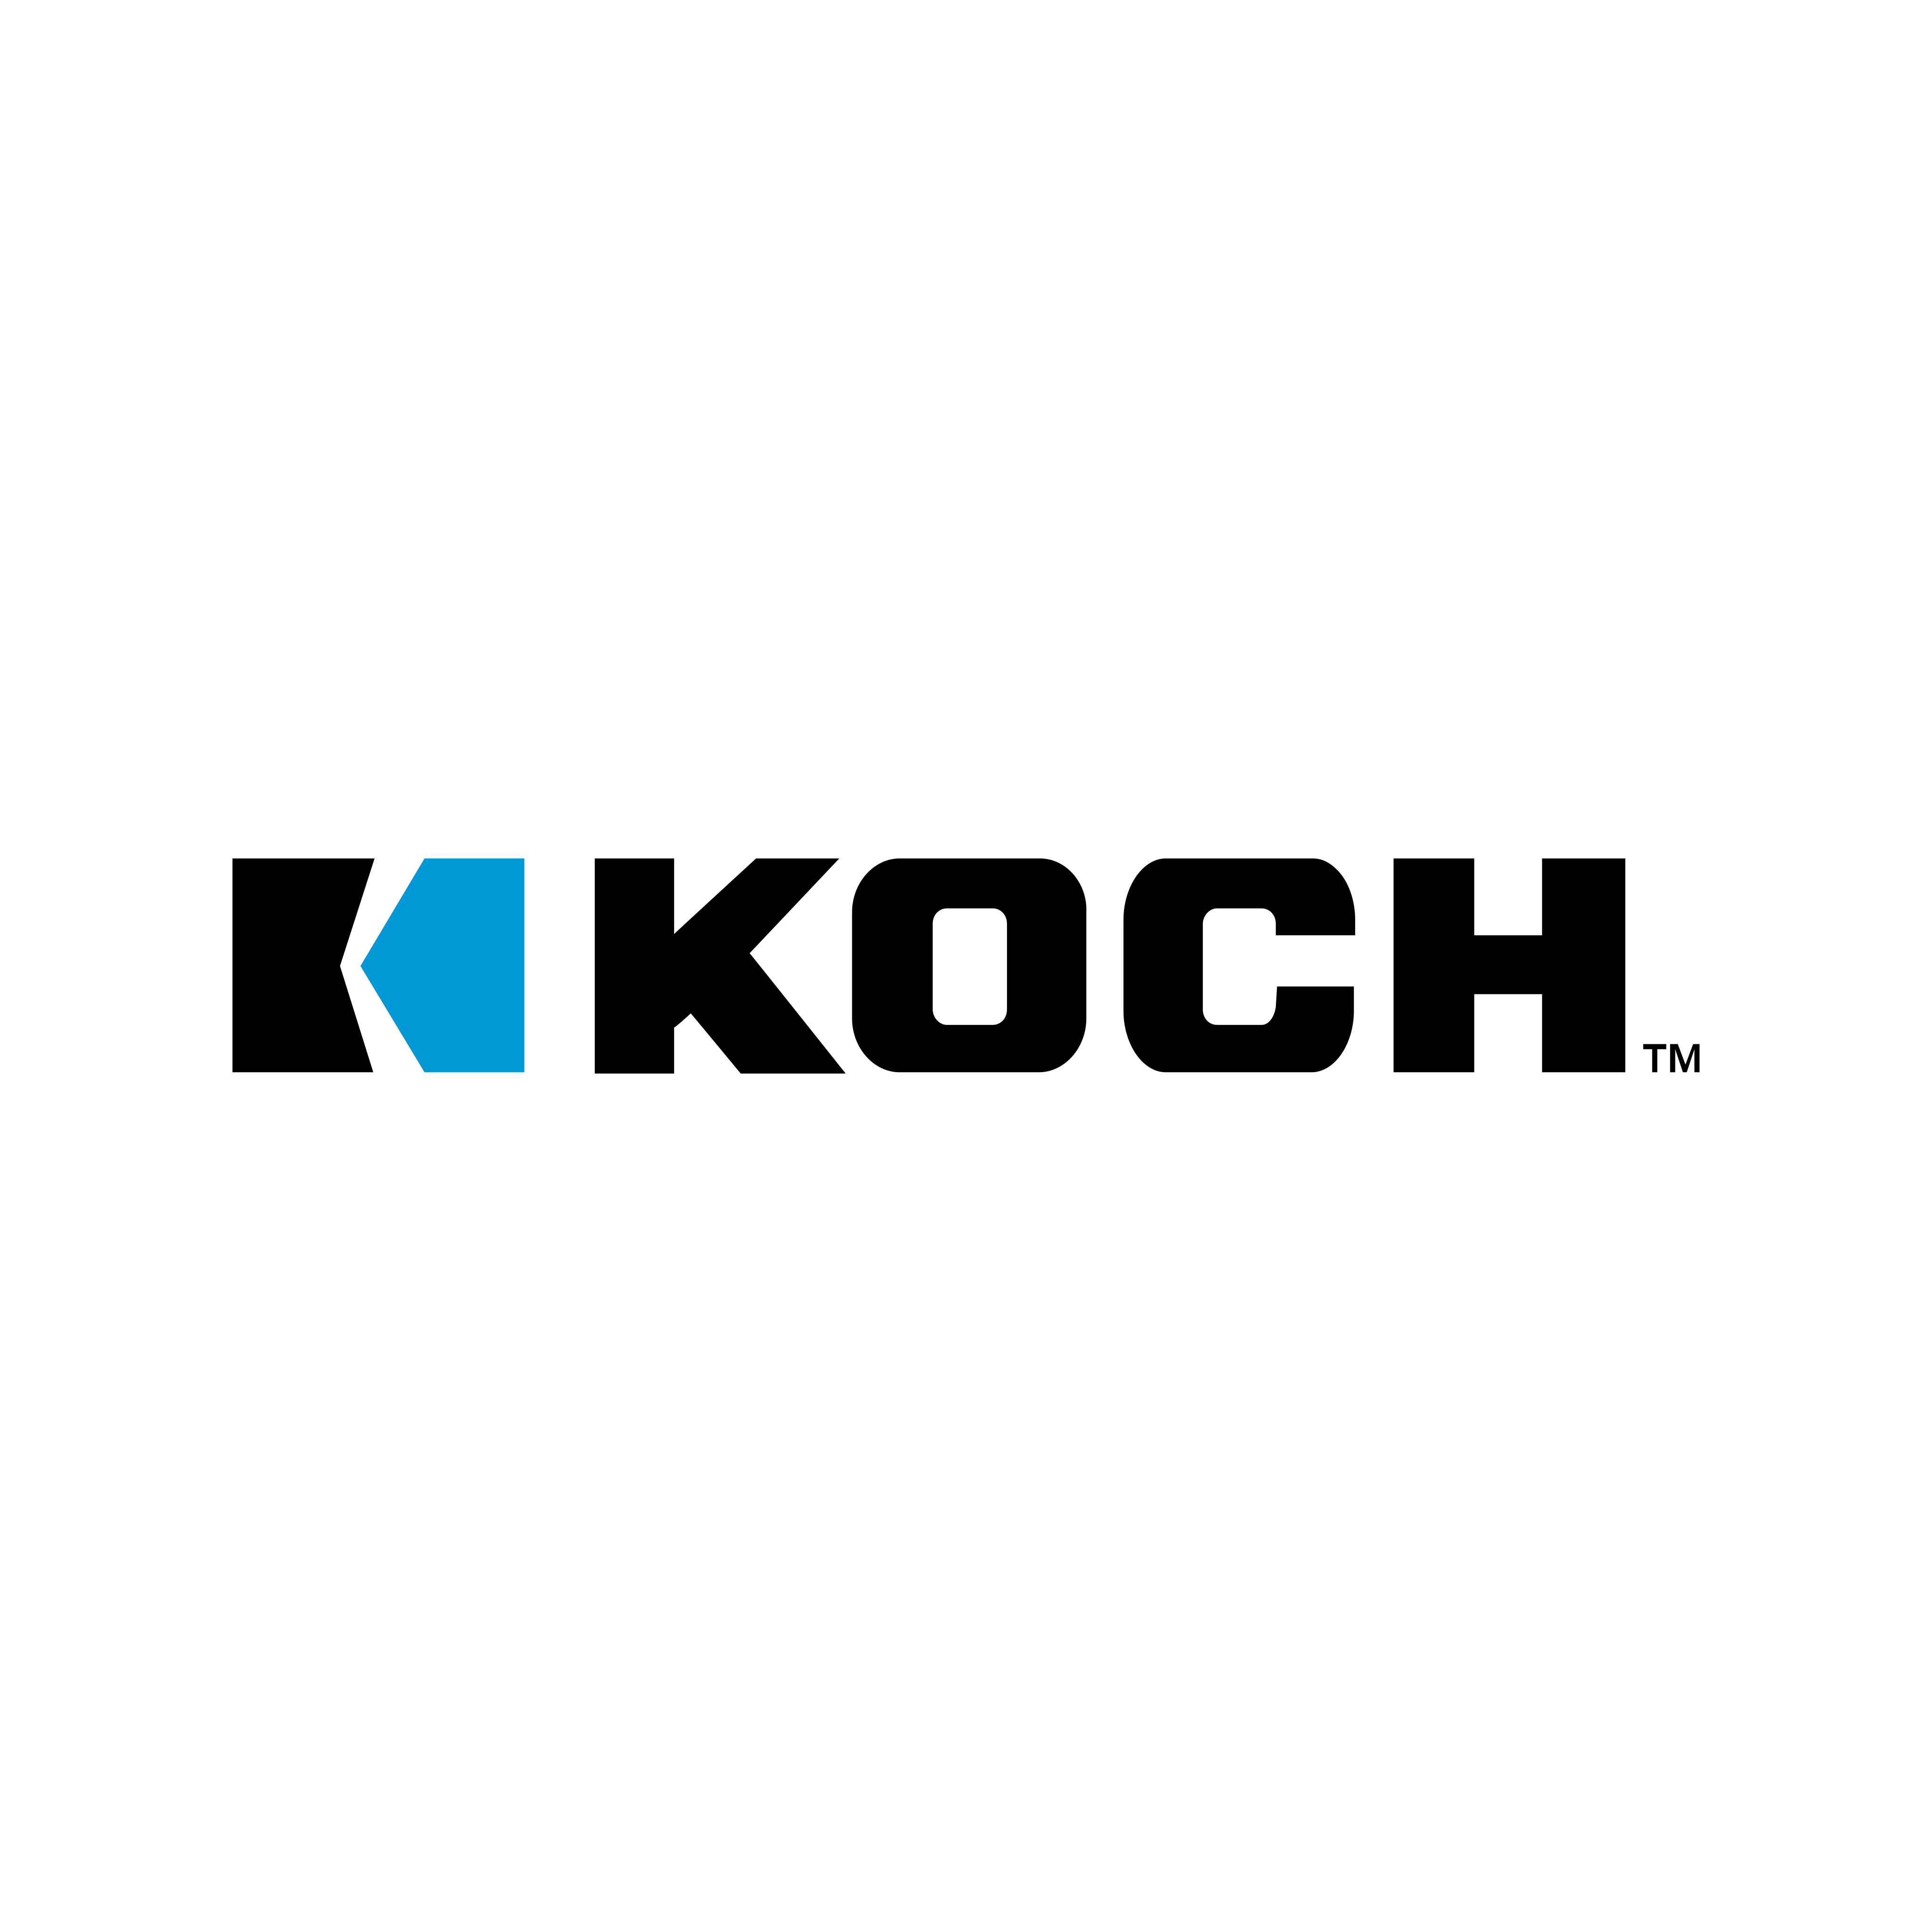 koch logo 0 - Koch Industries Logo